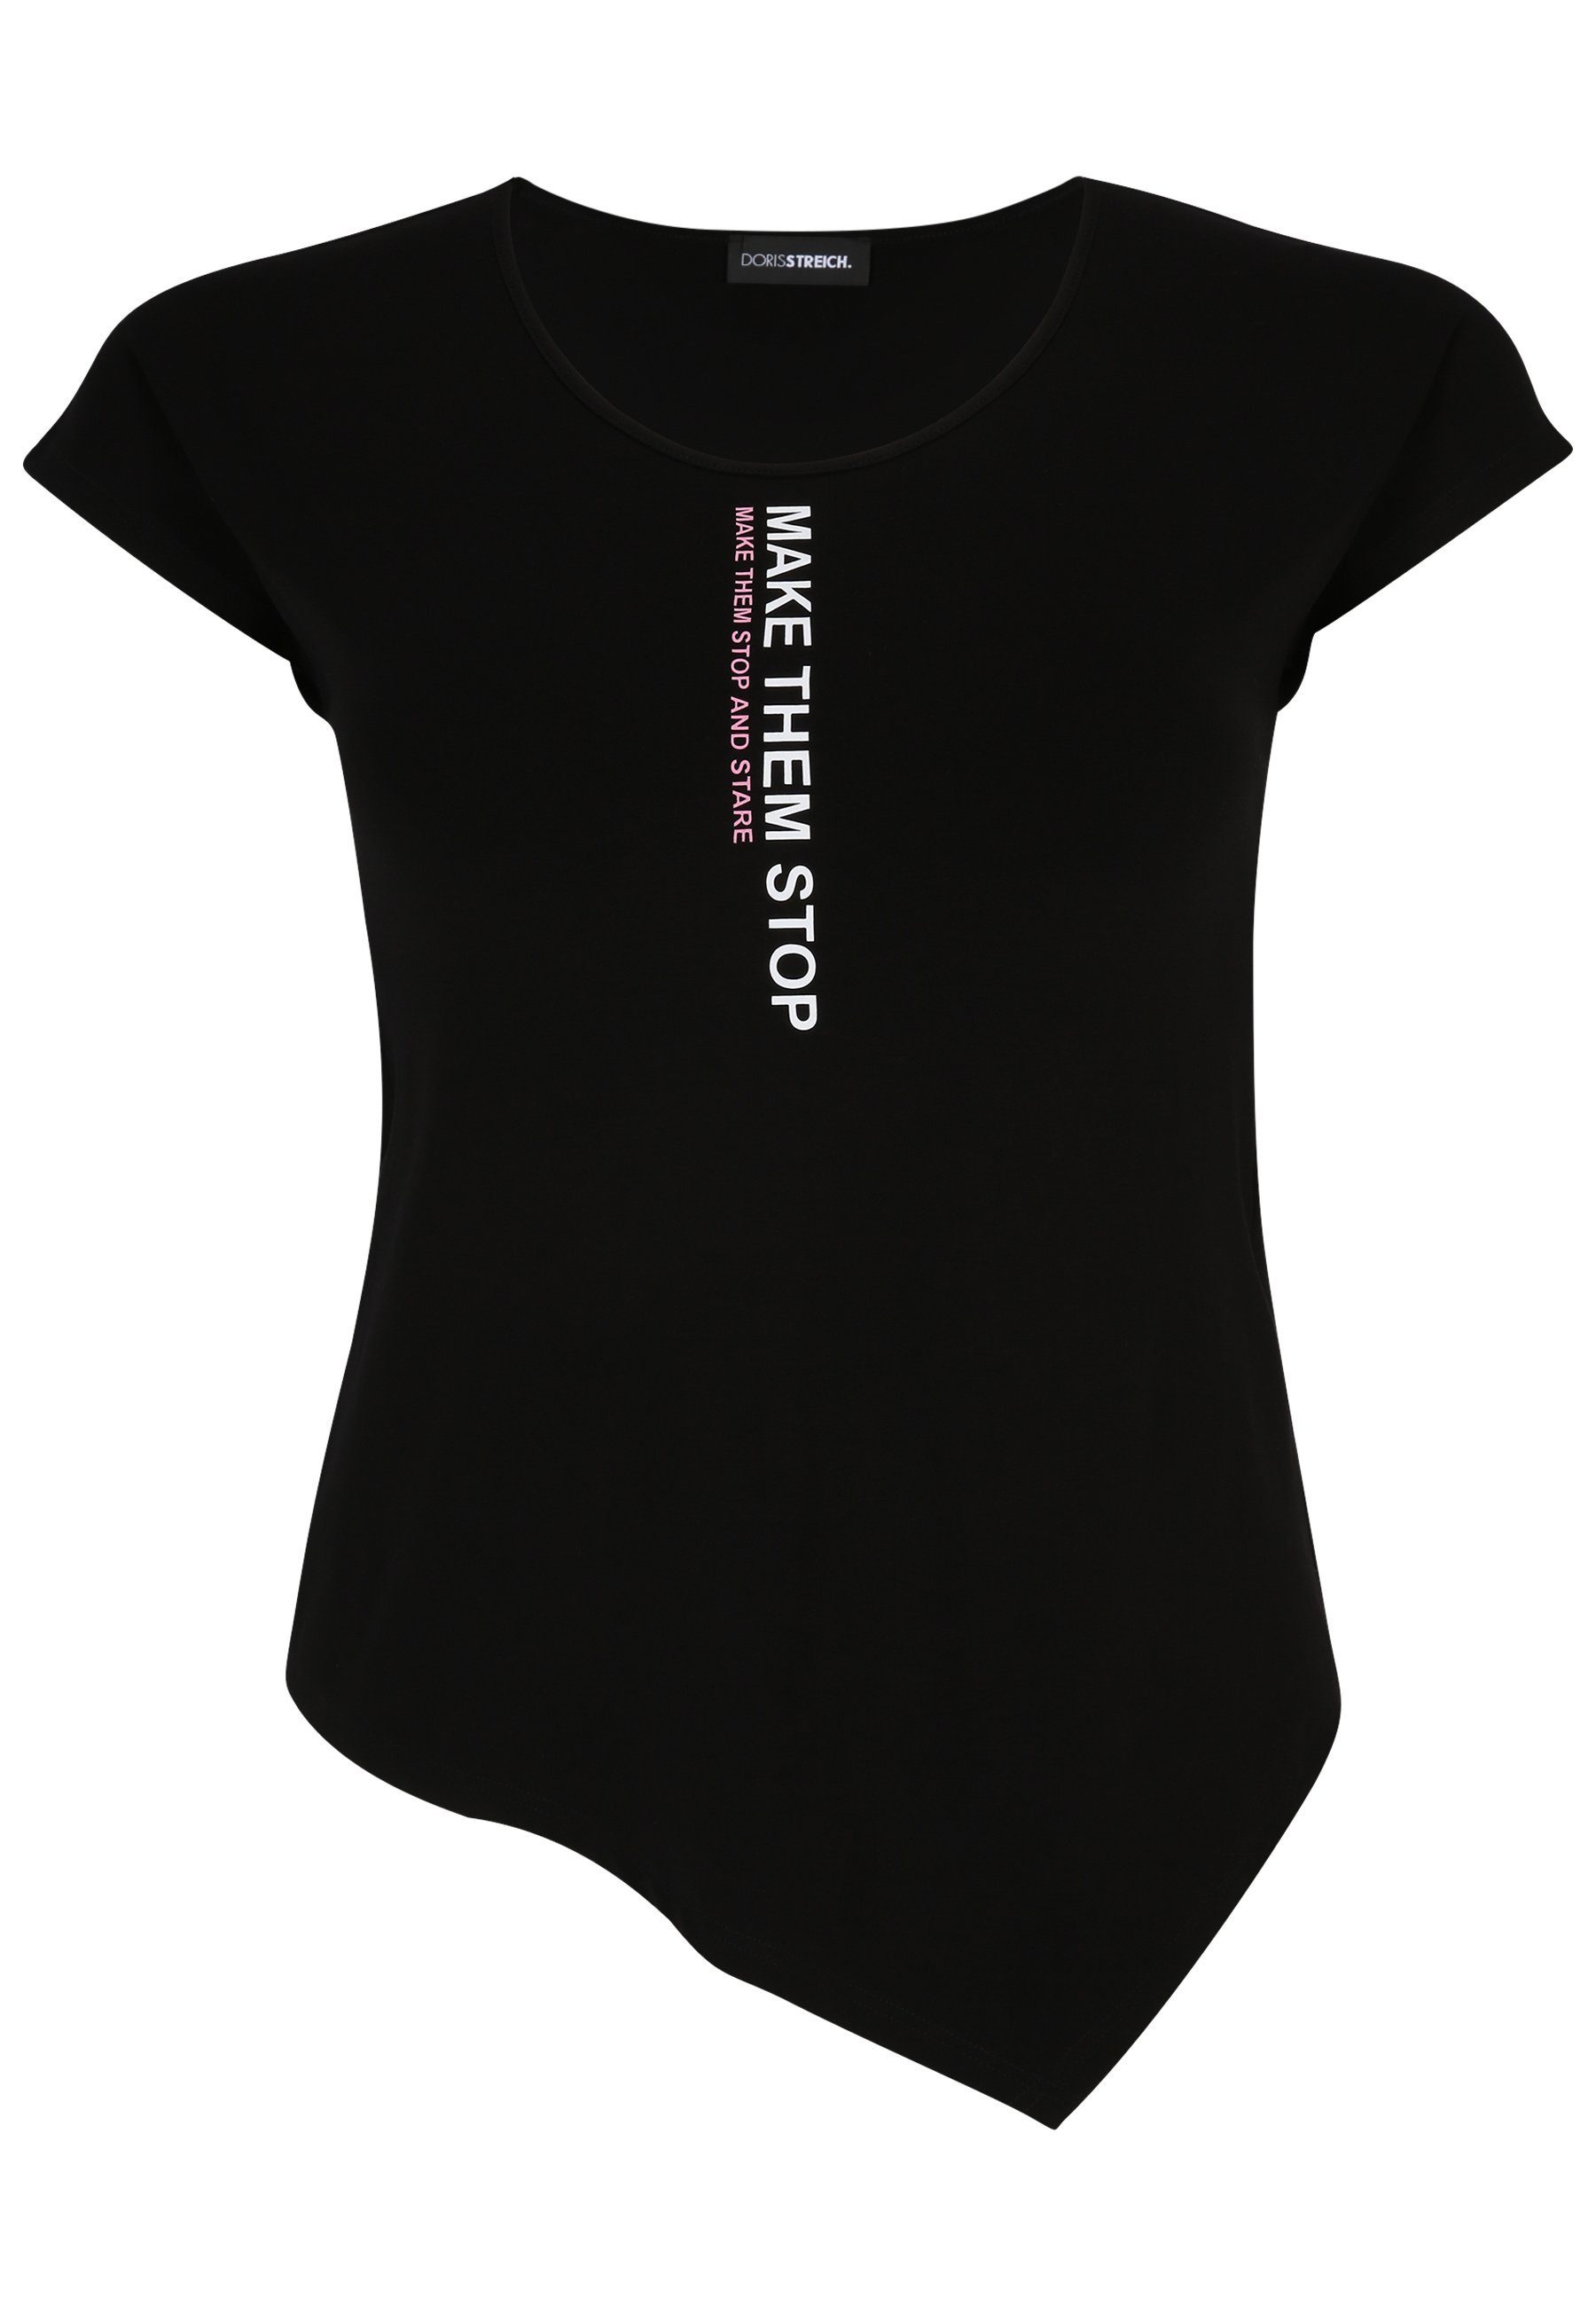 Doris Streich T-Shirt T-Shirt mit Wording-Motiv mit modernem Design